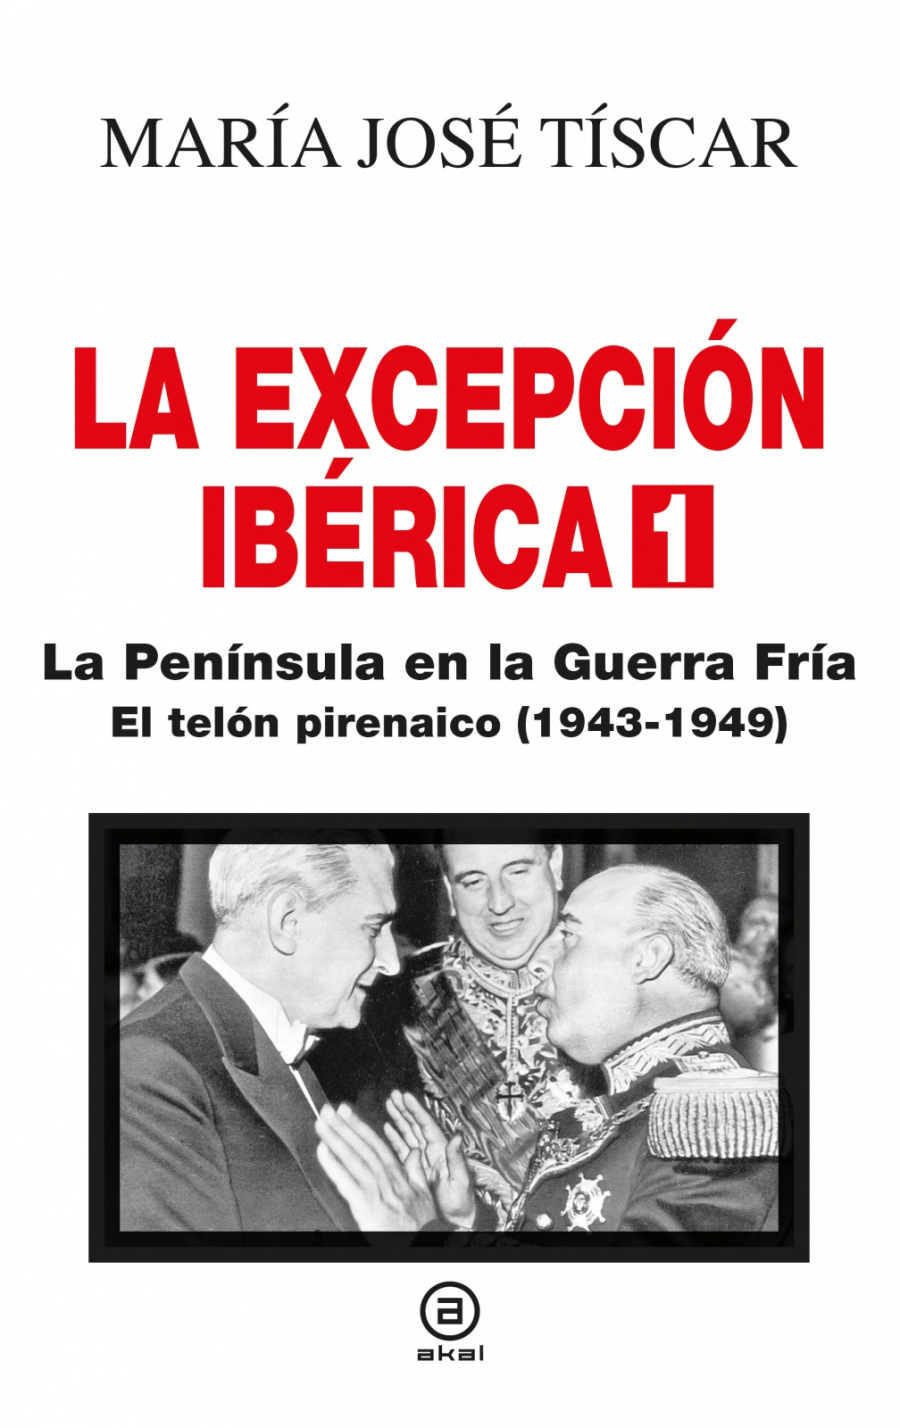 La Excepción Ibérica 1. La Península en la Guerra Fría El telón pirenáico (1943-1949)